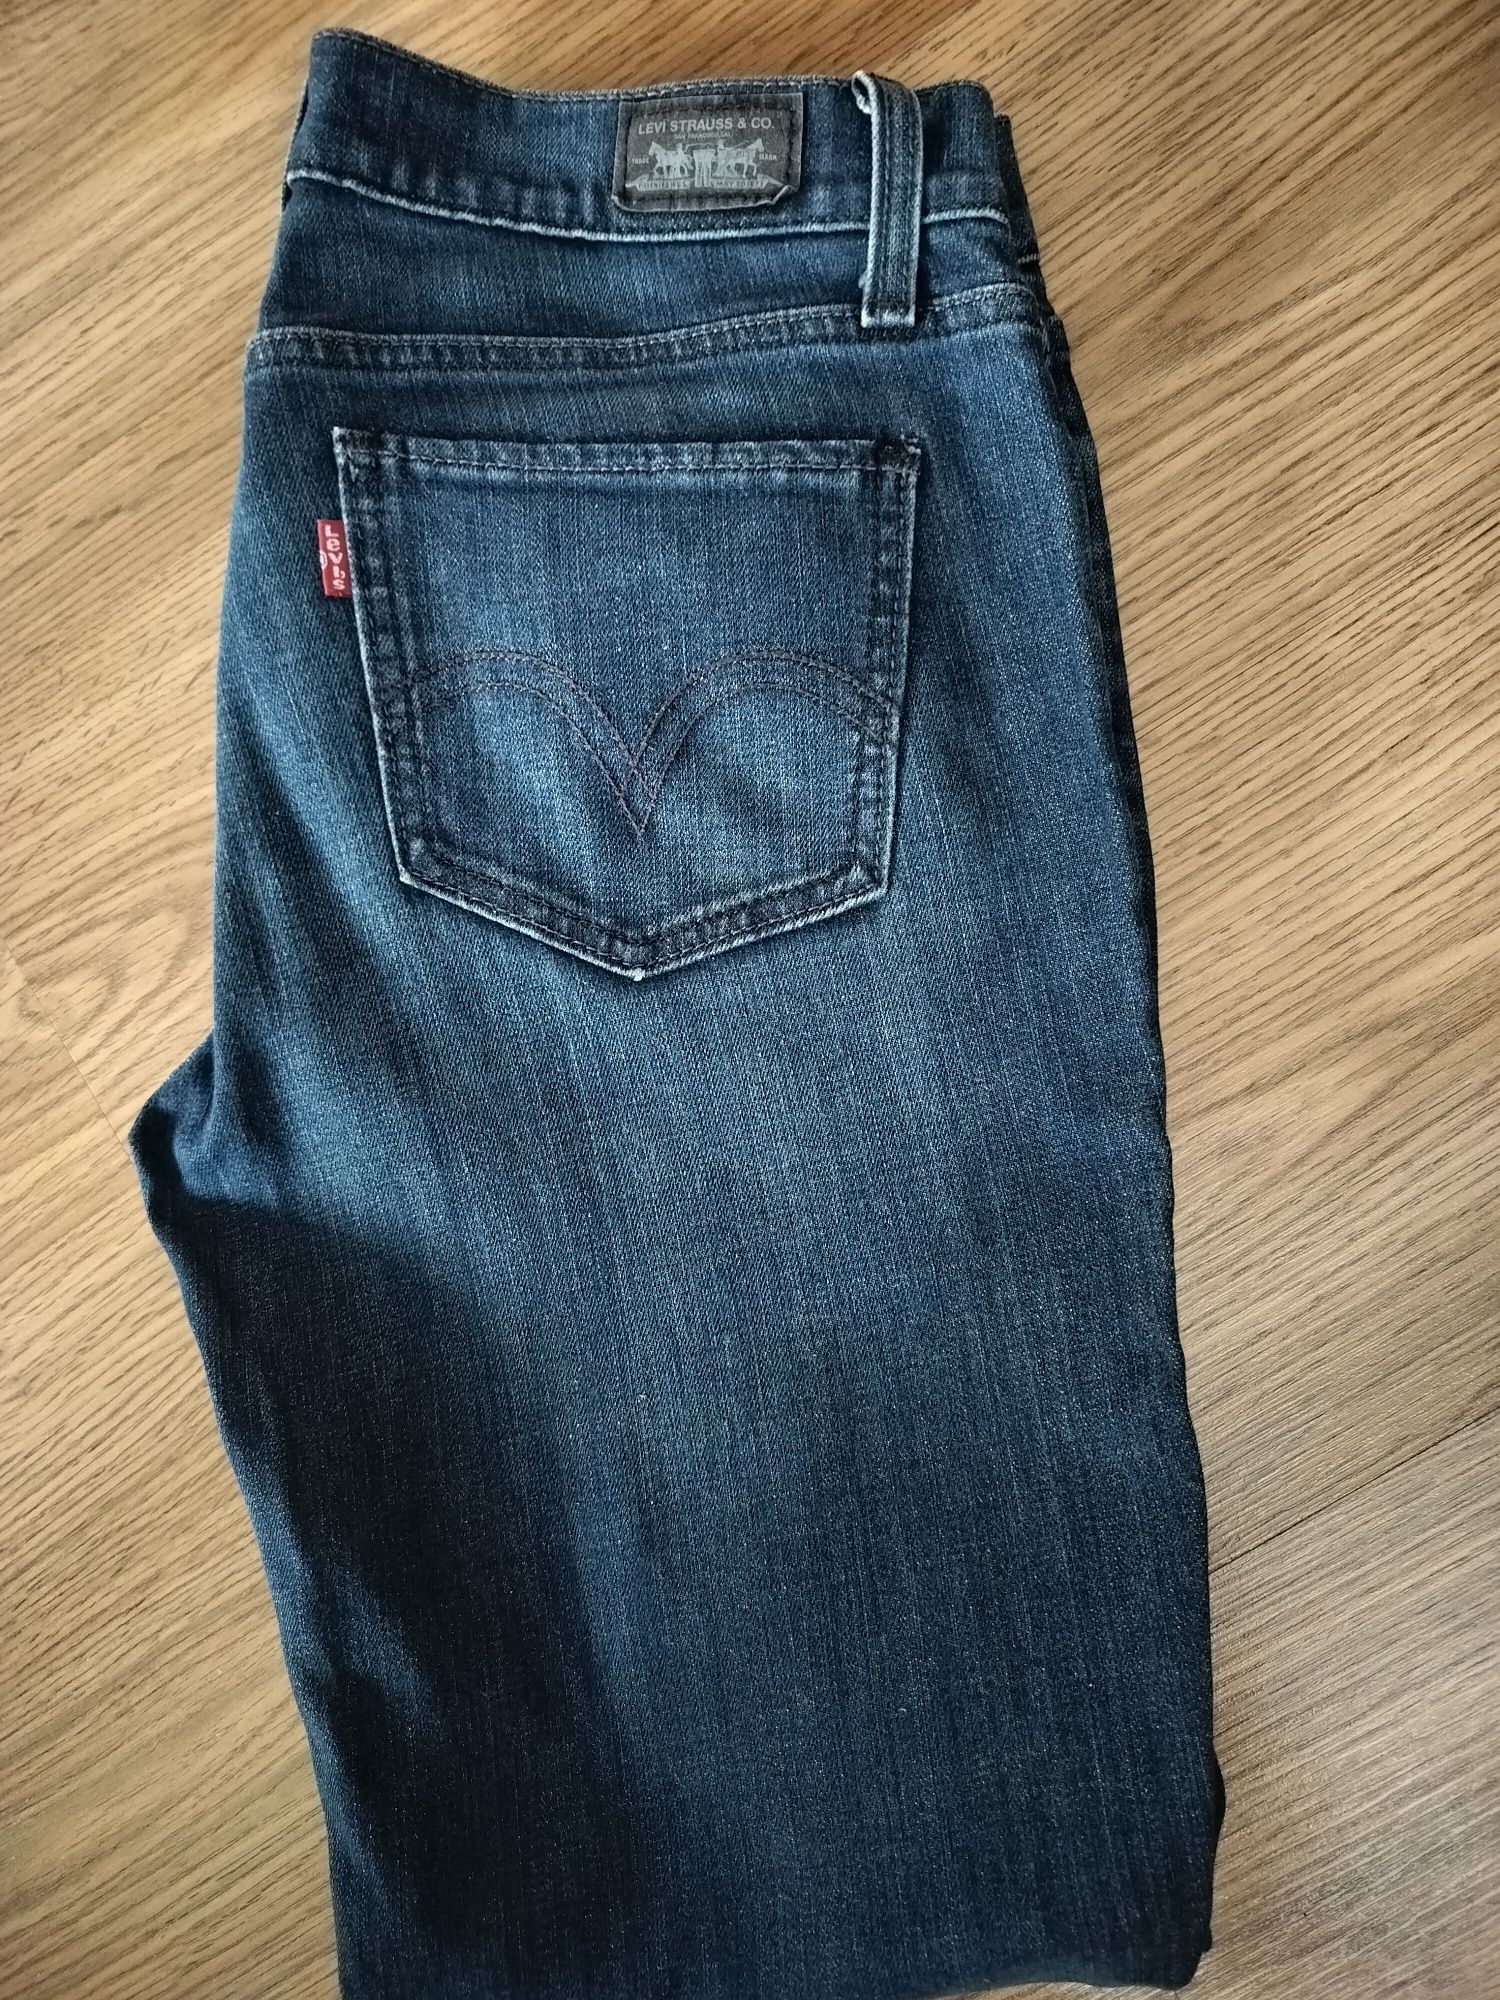 Spodnie, jeansy  damskie LEVI'S r 38- 40 lub 28-29